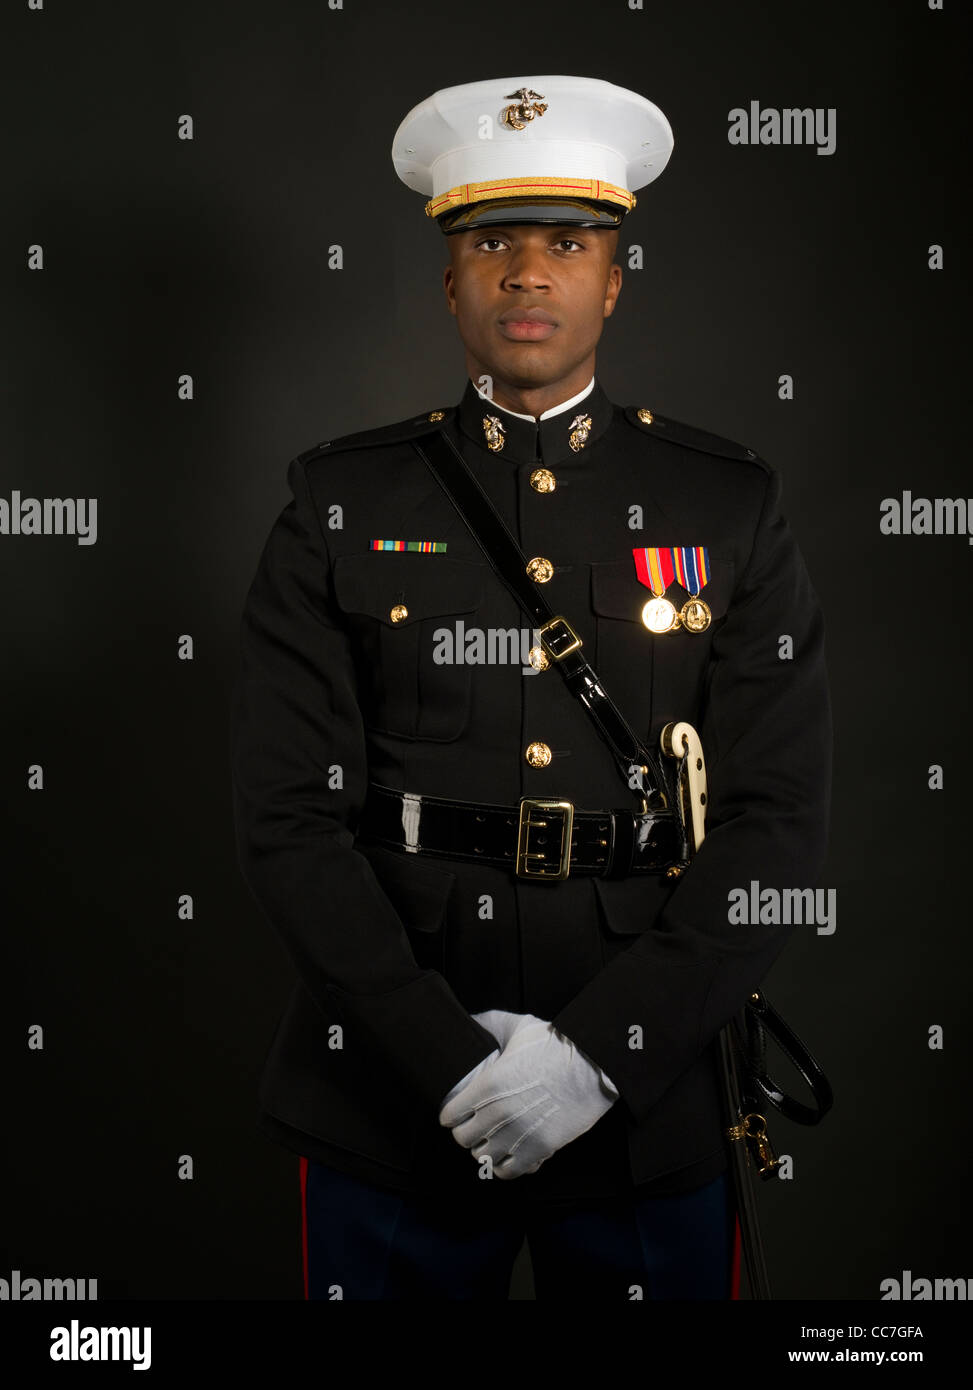 United States Marine Corps Officer im blauen Kleid 'A' Uniform einschließlich Medaillen Bänder, weiße Handschuhe, Kasernen Abdeckung (Hut) Schwert Stockfoto